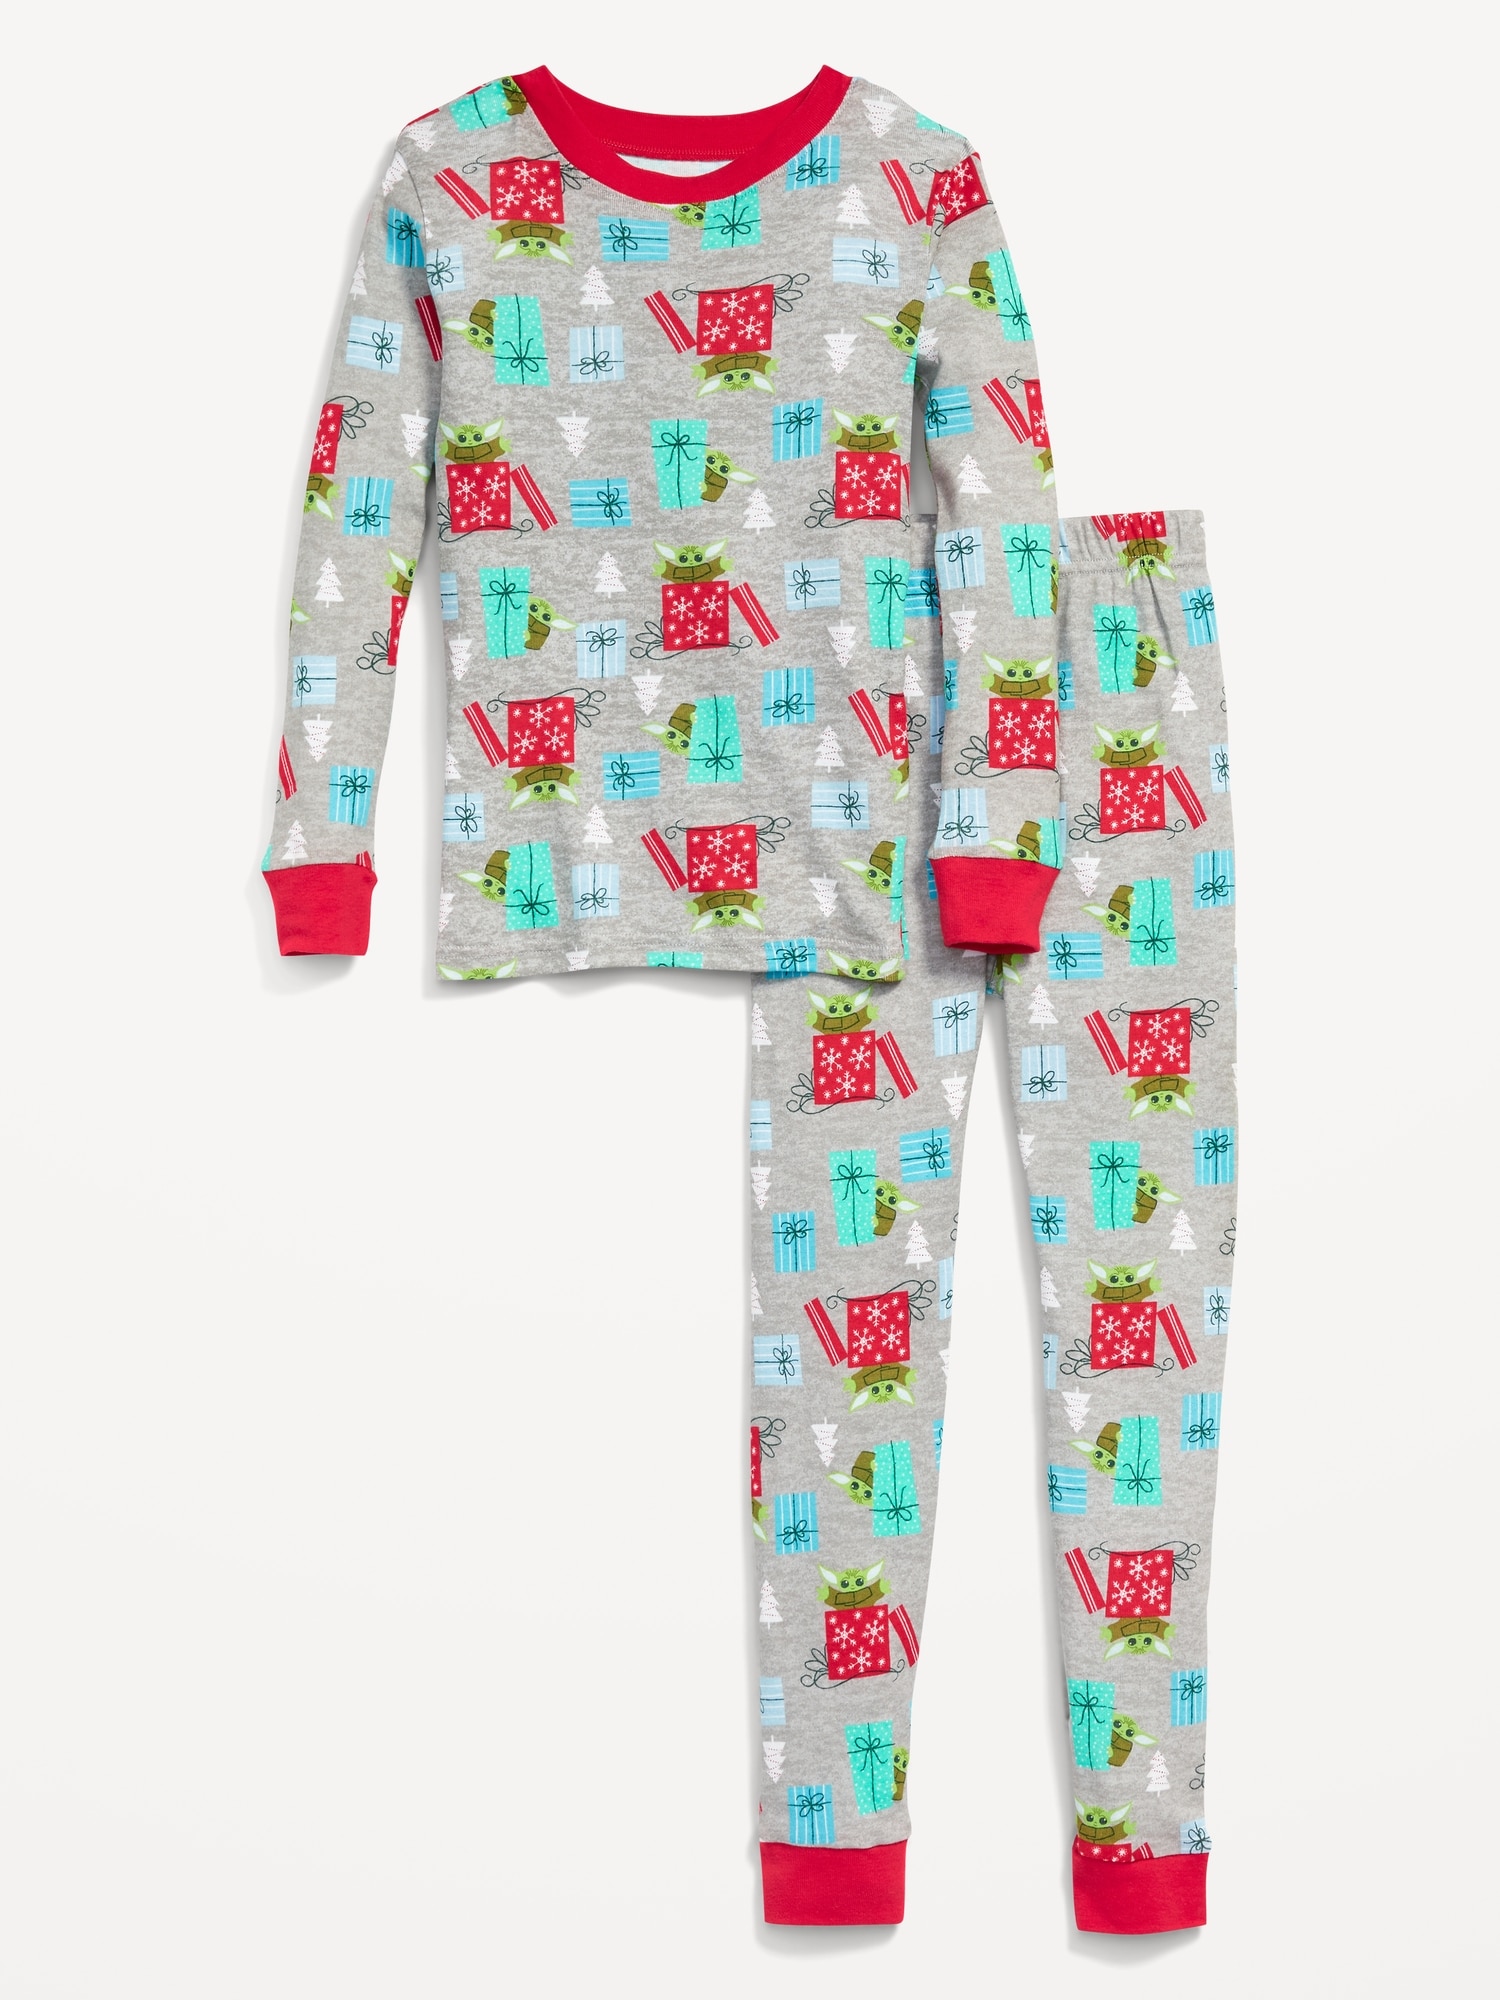 Gender-Neutral Licensed Graphic Snug-Fit Pajama Set for Kids